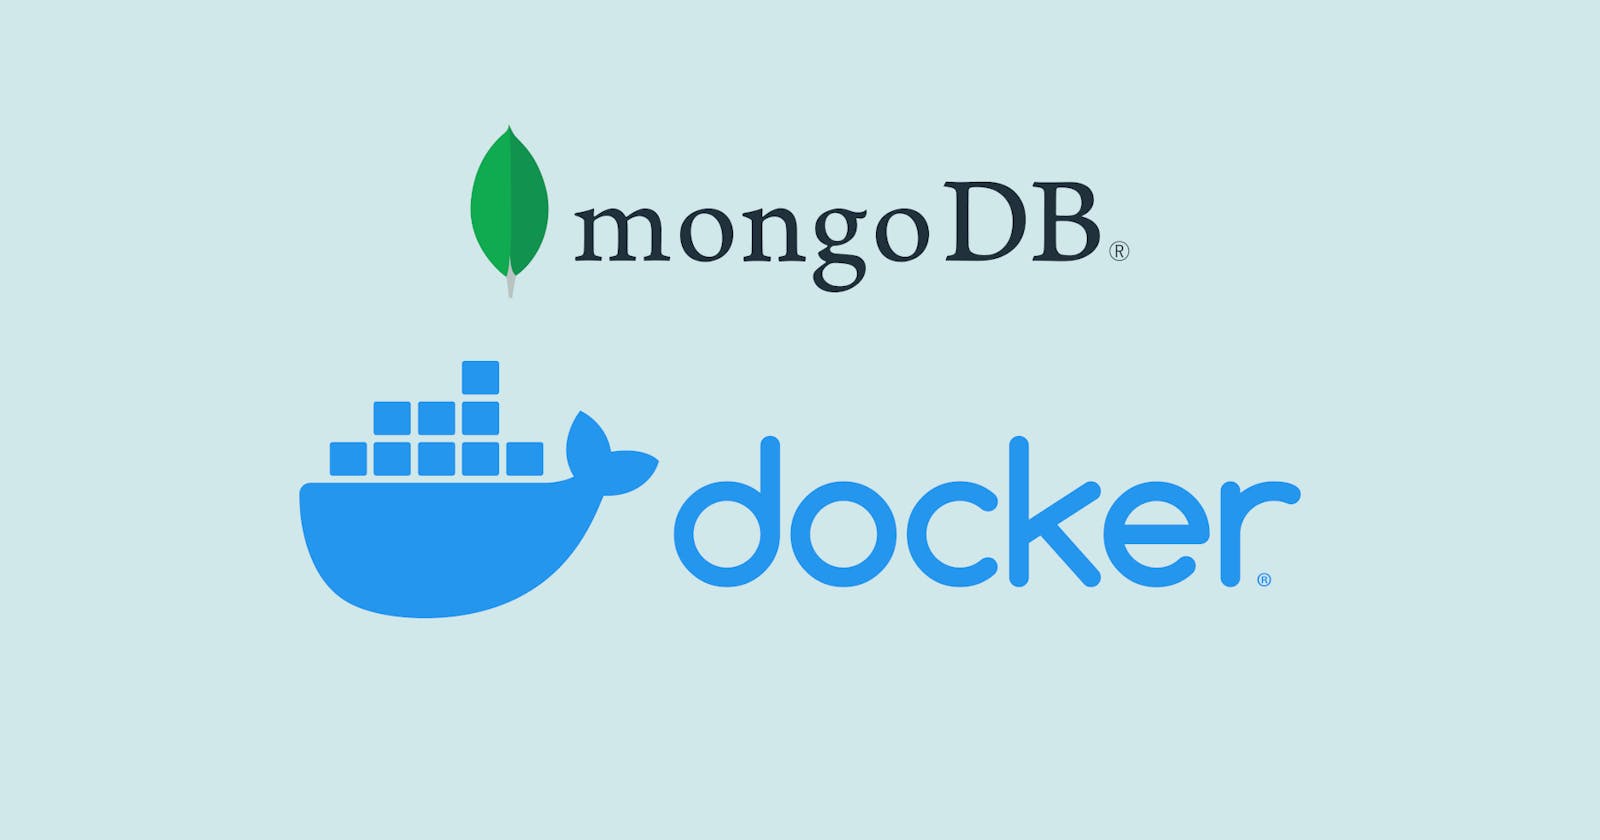 Setup MongoDB docker container quick!